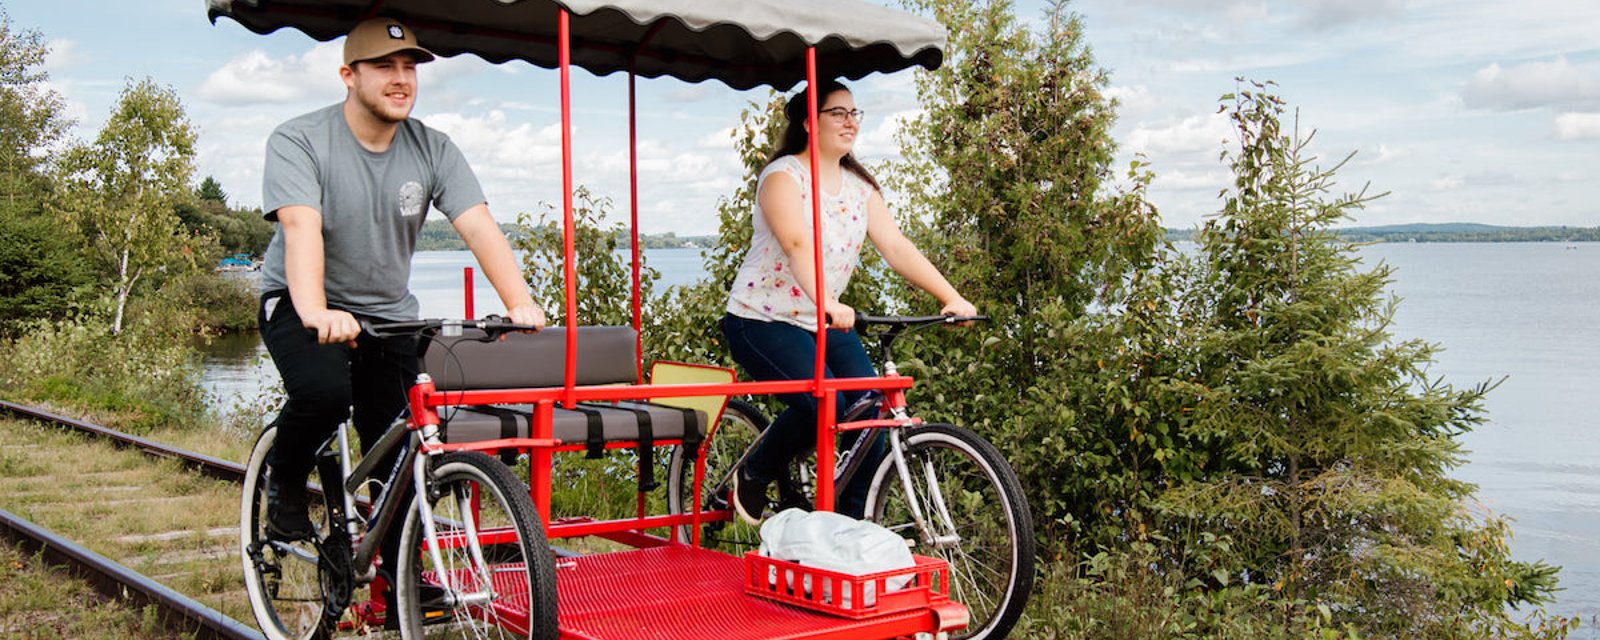 Suggestion d’activé estivale: du vélo sur rails dans un cadre enchanteur